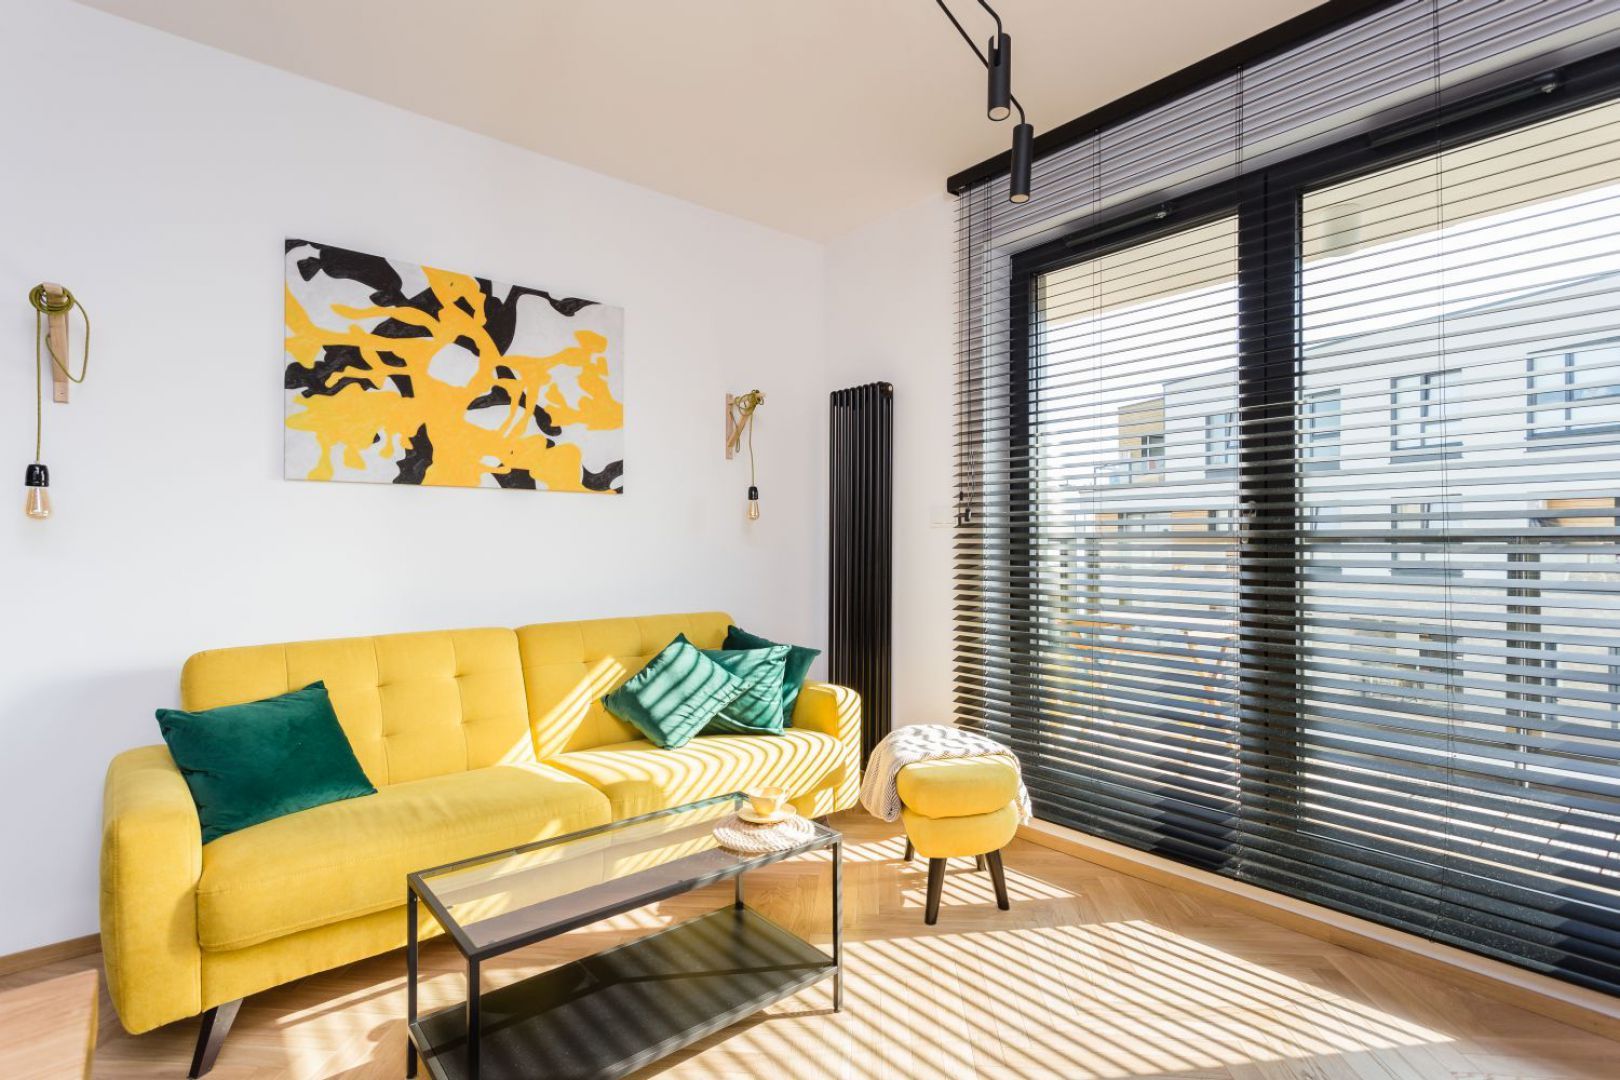 Żółta sofa w salonie, czarne meble w kuchni. Projekt wnętrza: Karolina Karwowska. Fot. Michał Młynarczyk